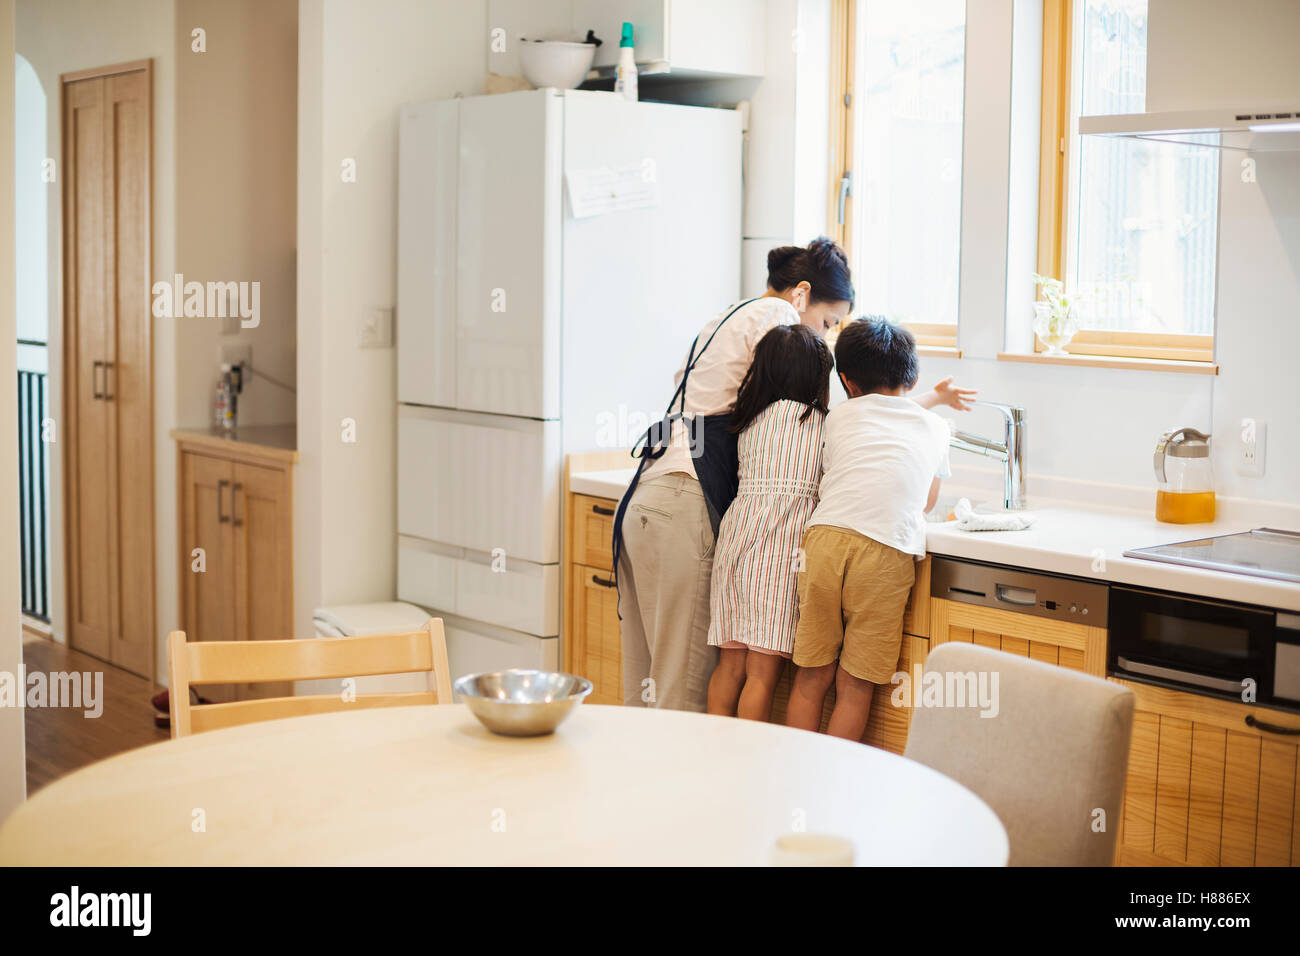 Casa di famiglia. Una madre e due bambini permanente al lavello in cucina. Foto Stock